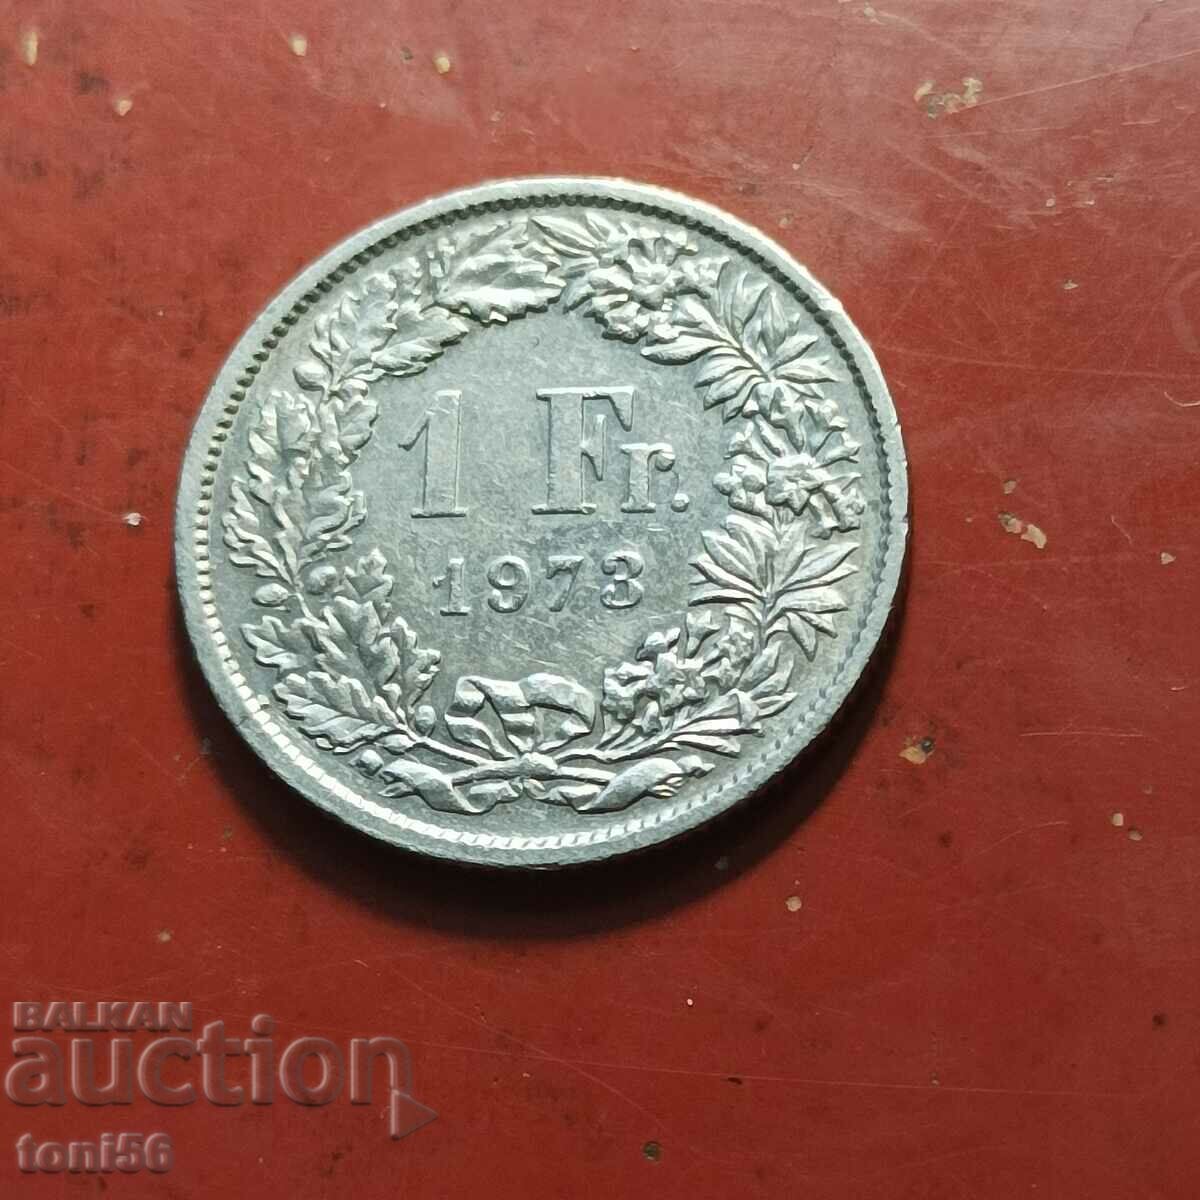 Switzerland 1 Franc 1973 UNC